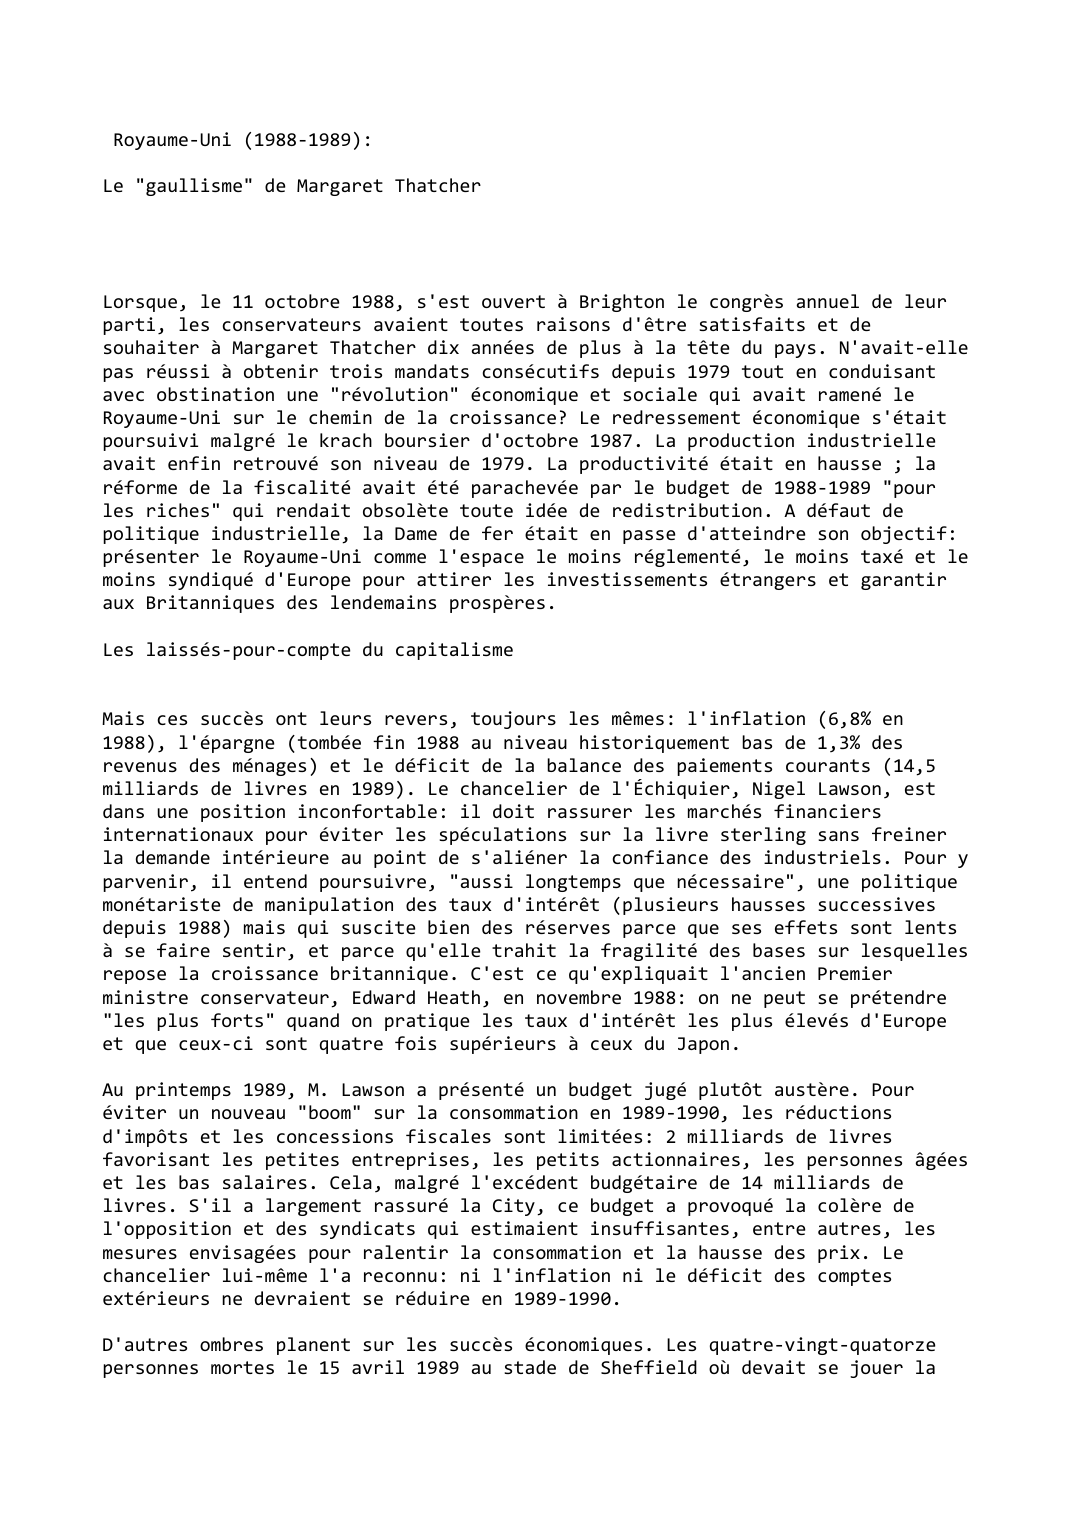 Prévisualisation du document Royaume-Uni (1988-1989):

Le "gaullisme" de Margaret Thatcher